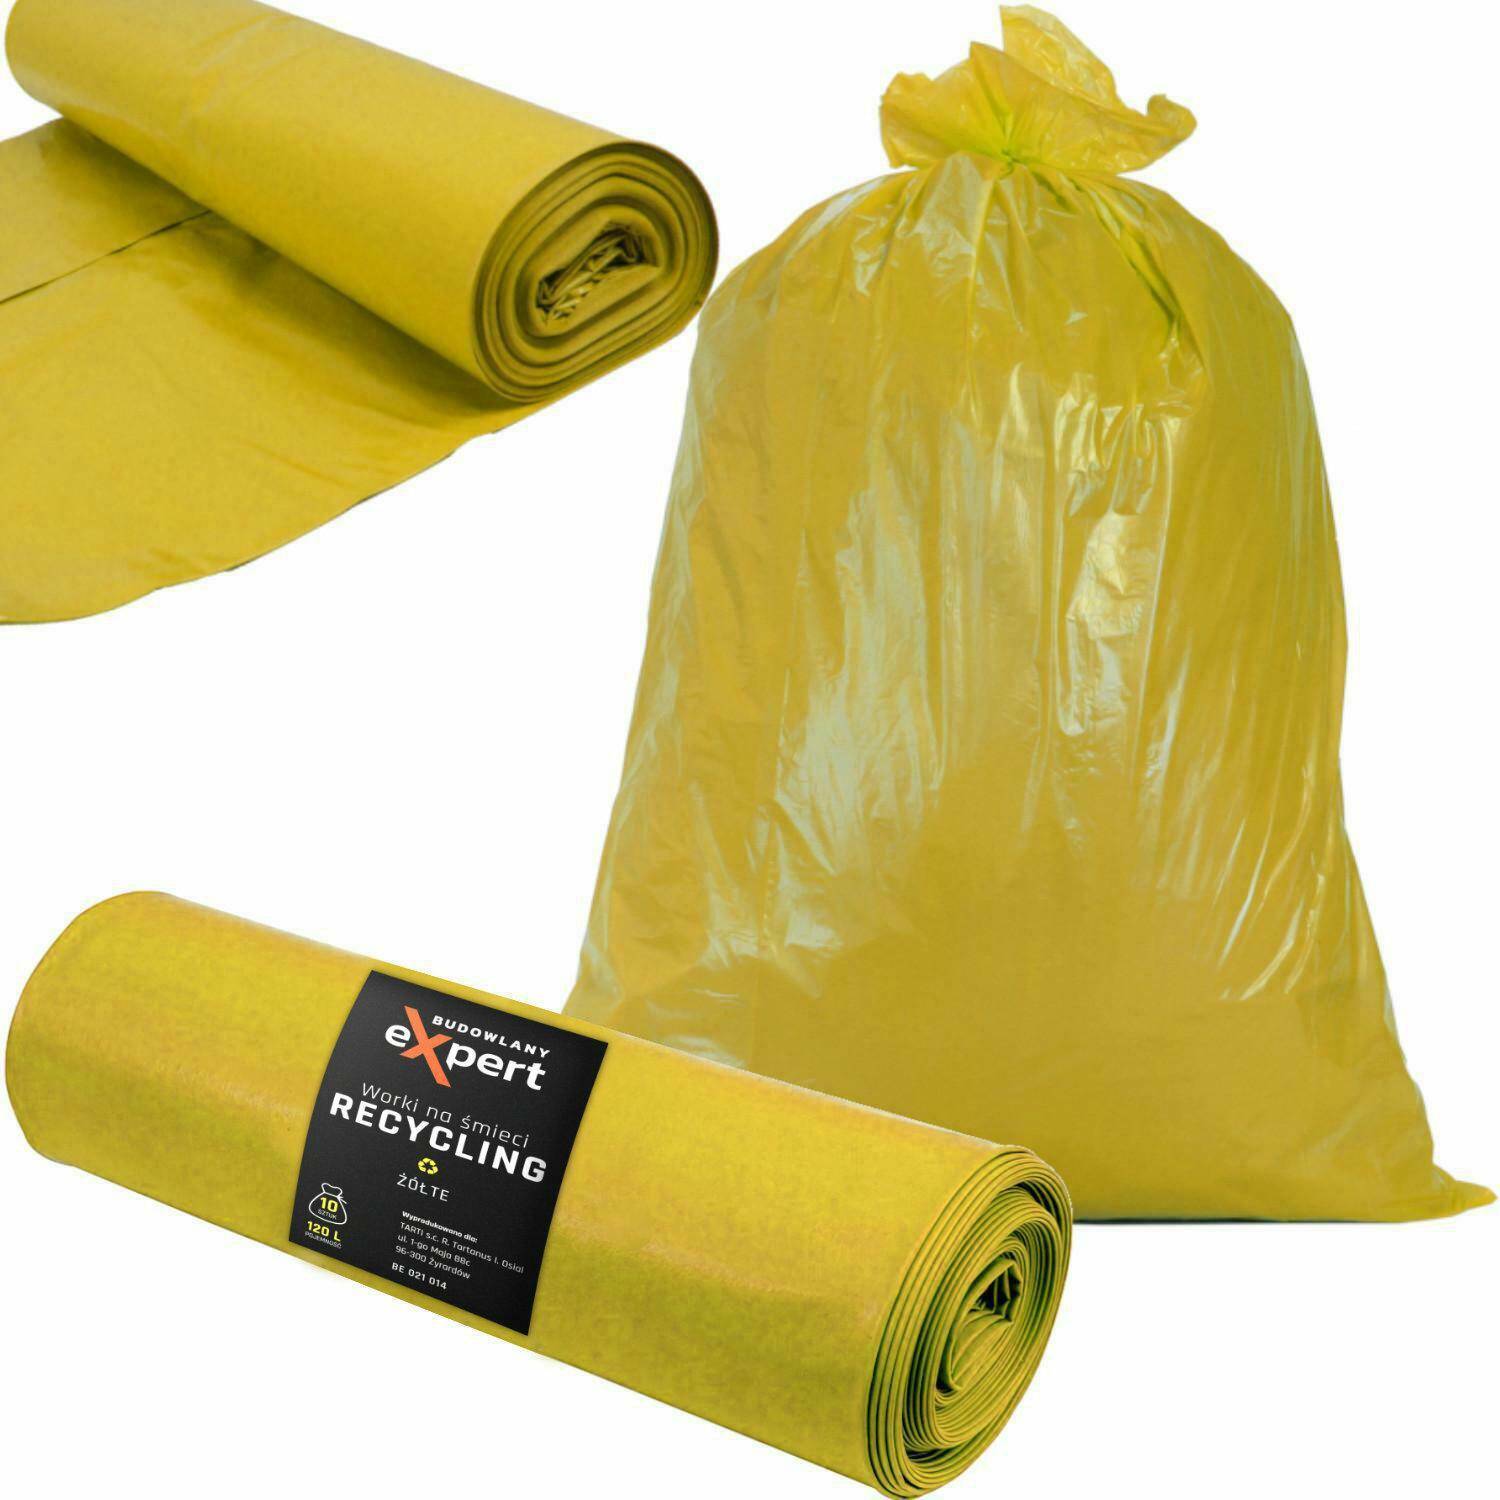 BE worki na śmieci RECYKLING żółte 120L